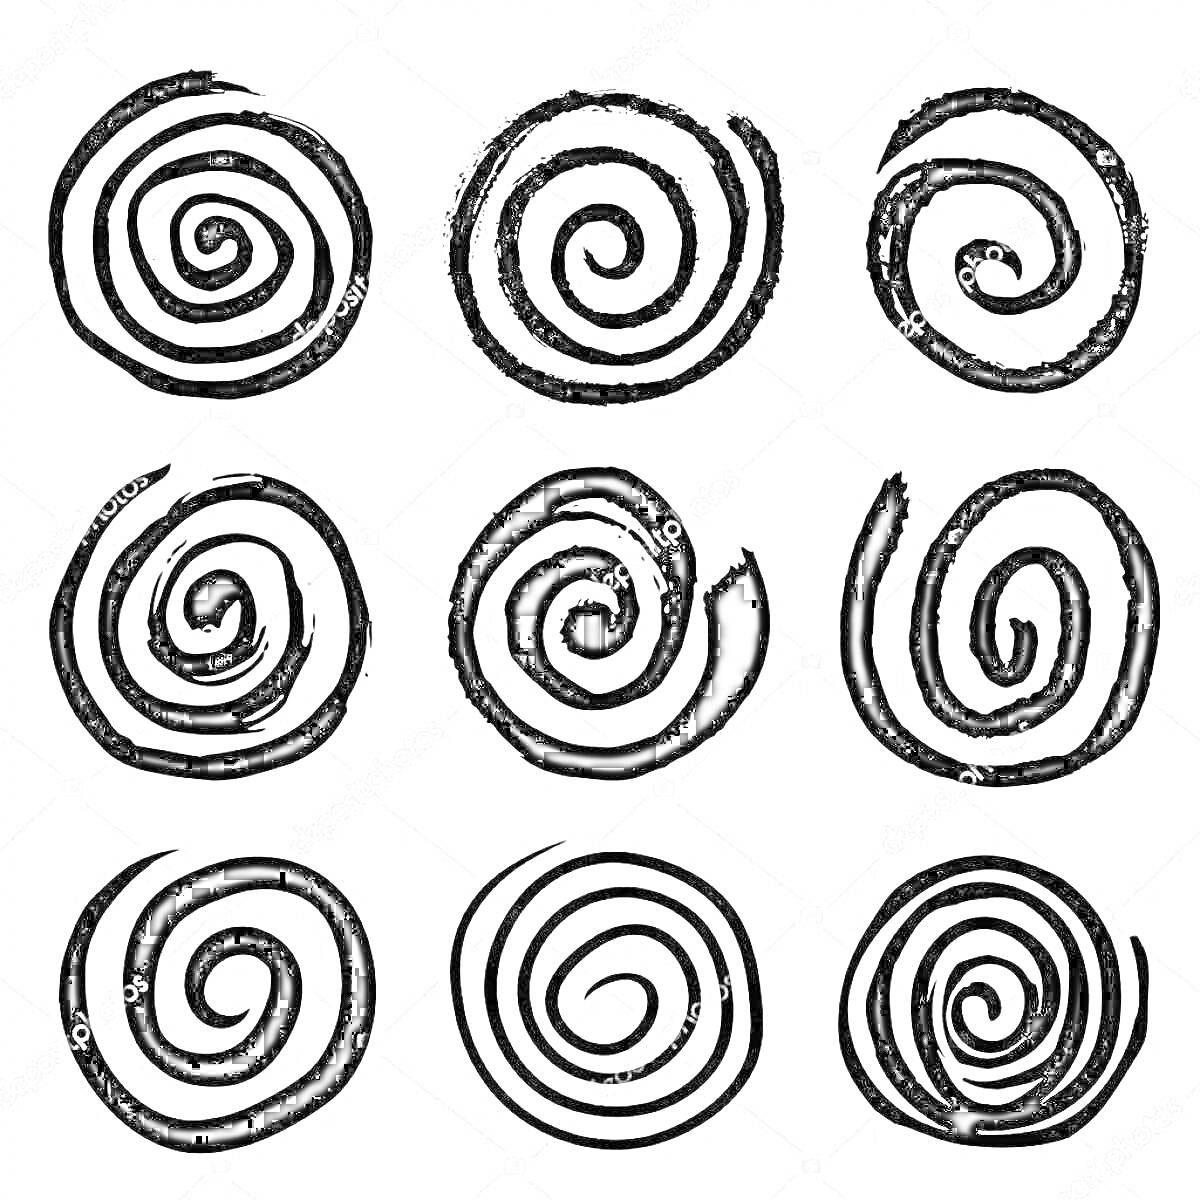 Раскраска Набор из девяти закрученных линий-спиралей различной толщины и изгиба